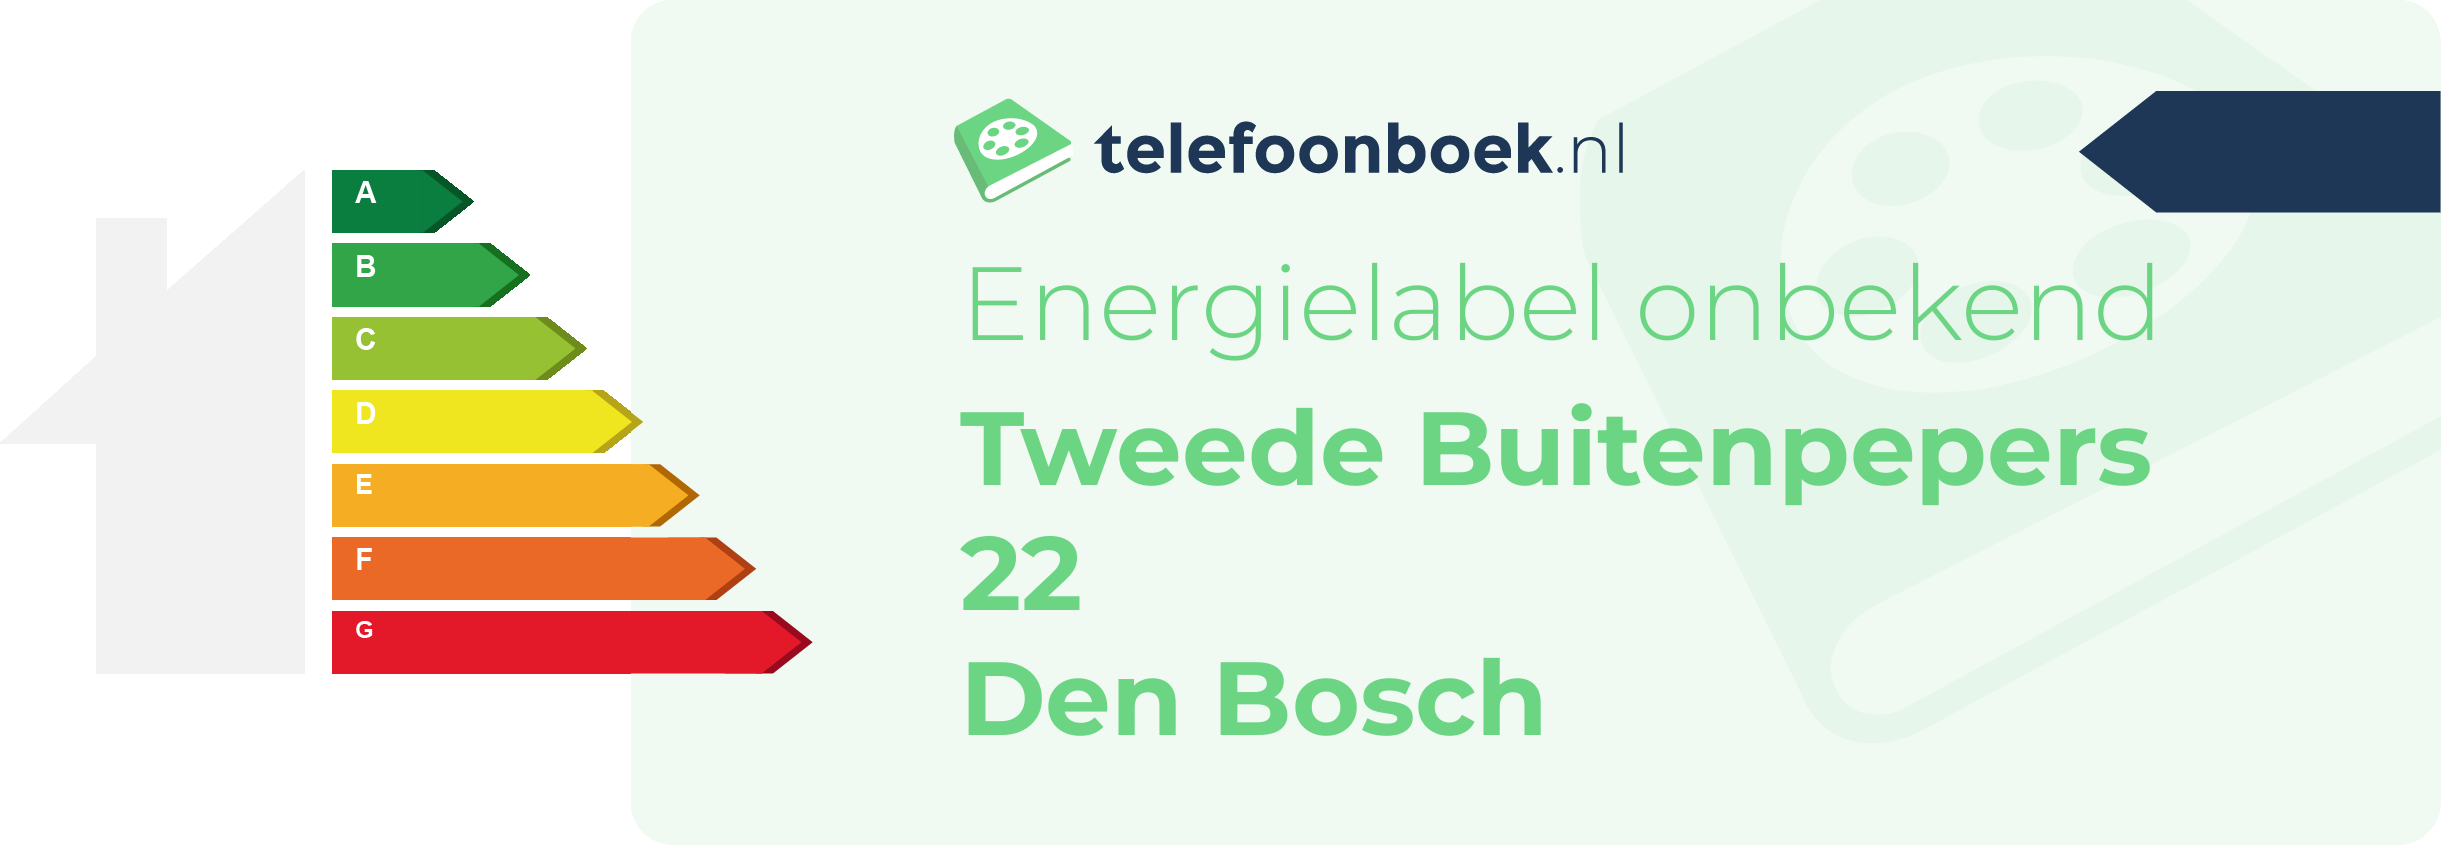 Energielabel Tweede Buitenpepers 22 Den Bosch